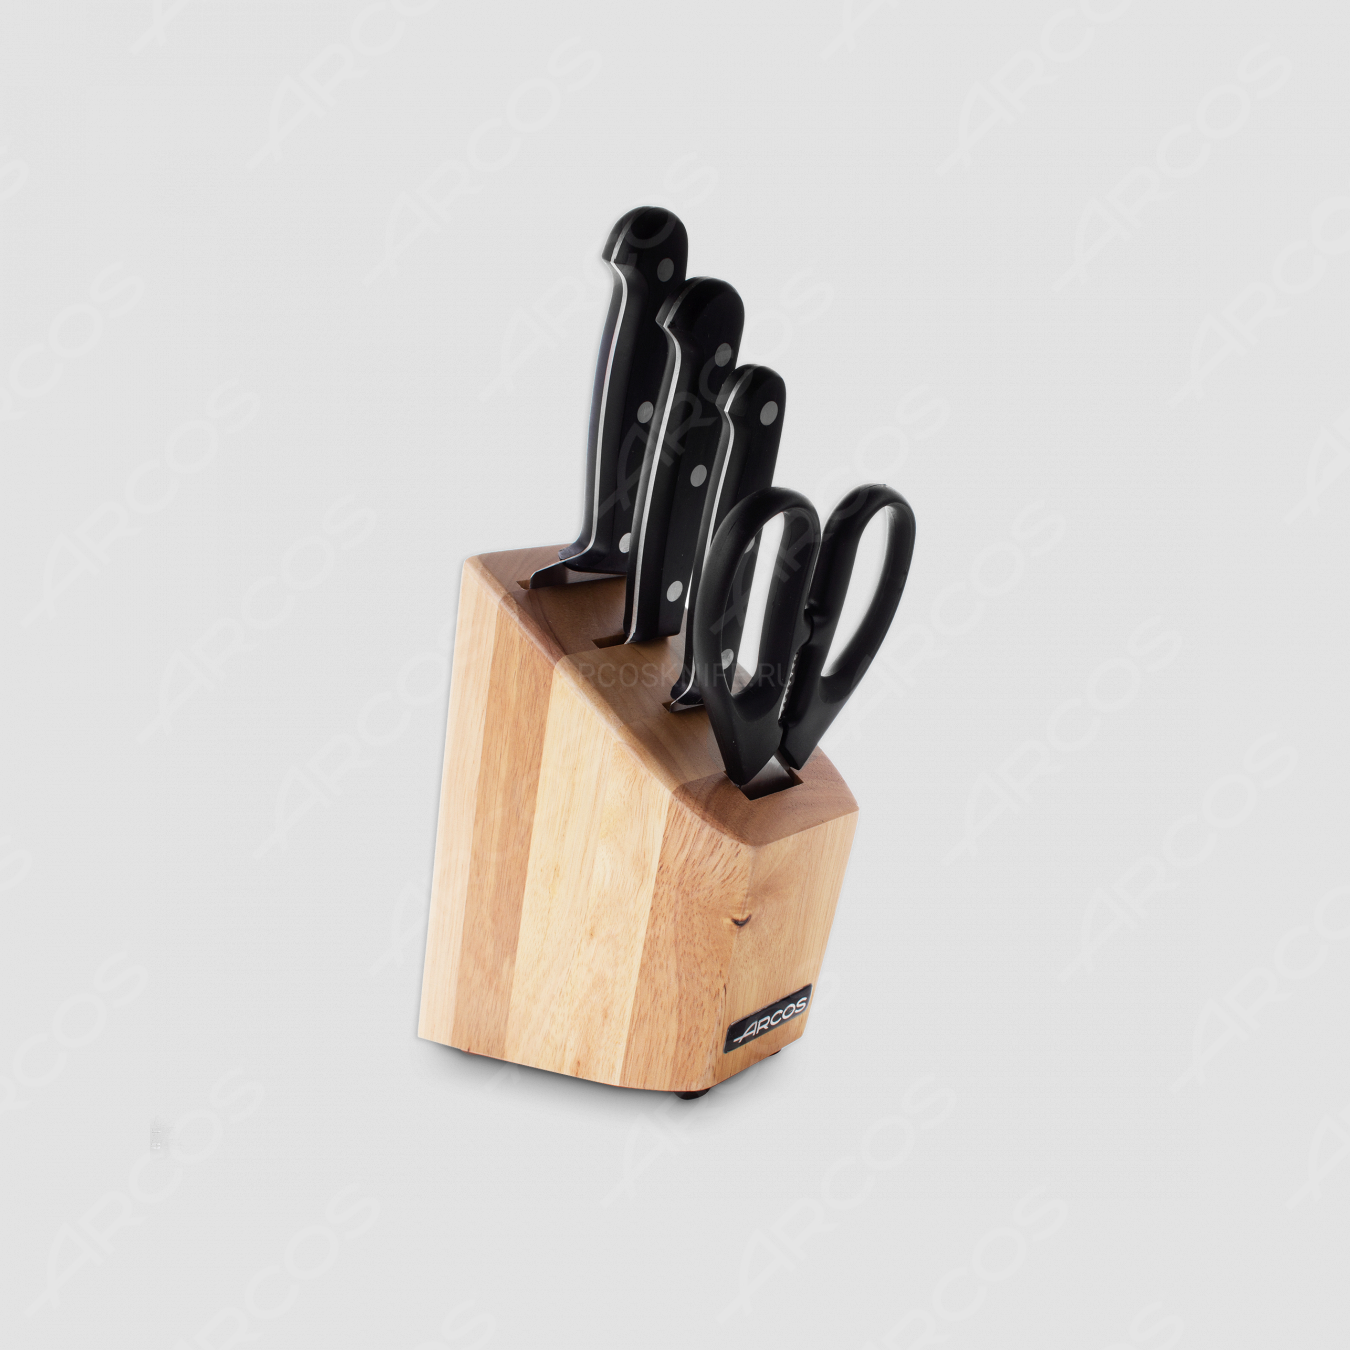 Набор из 3-х кухонных ножей с ножницами в деревянной подставке, серия Universal, ARCOS, Испания